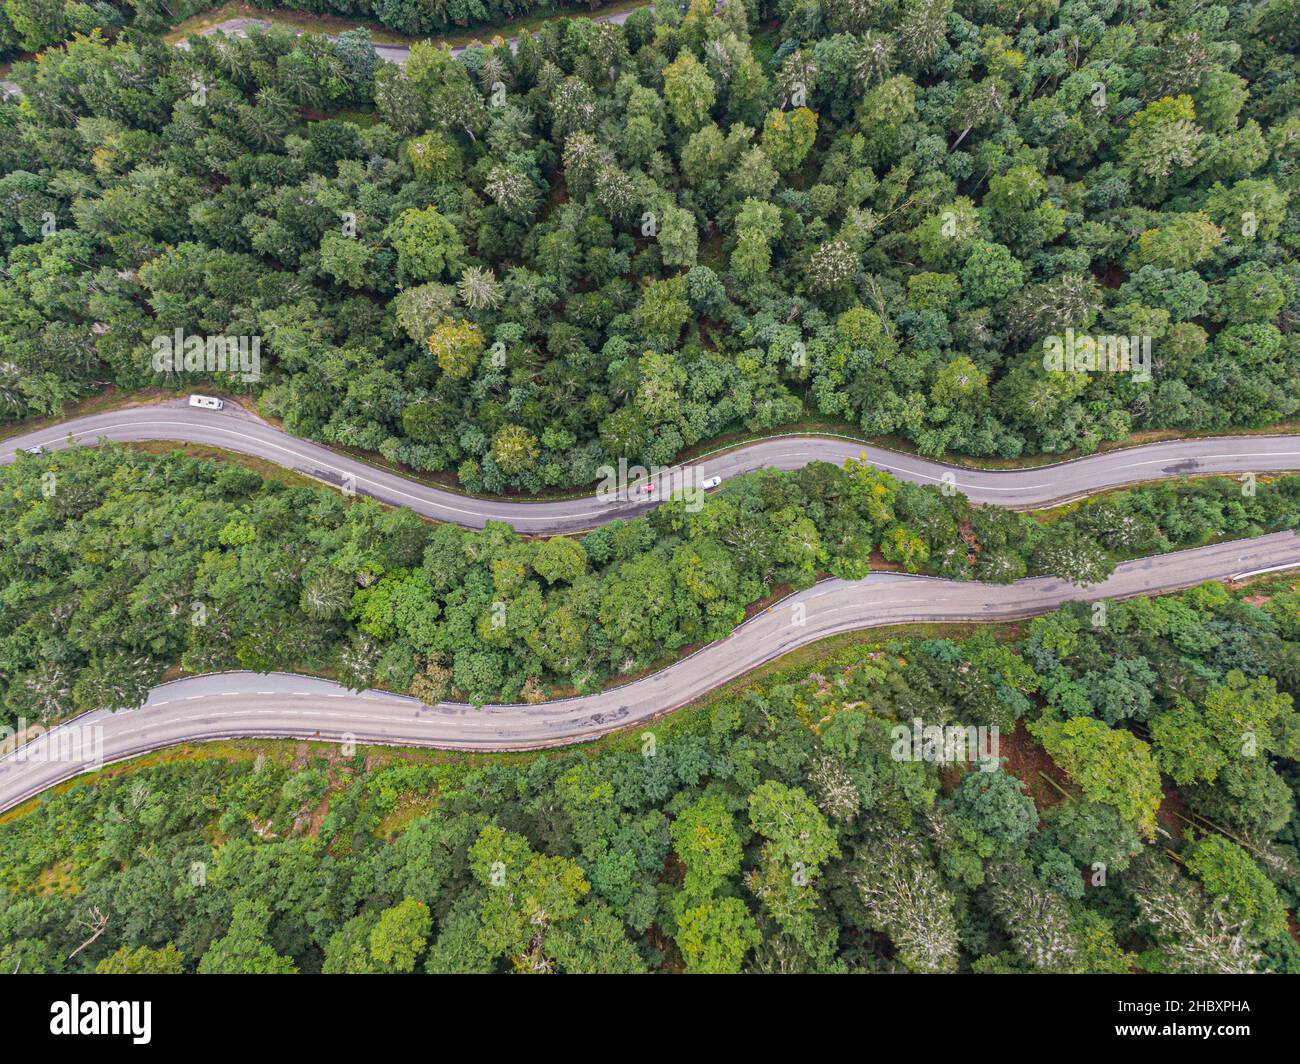 Vista aérea en dos carreteras que cruzan el bosque de coníferas de voges Foto de stock